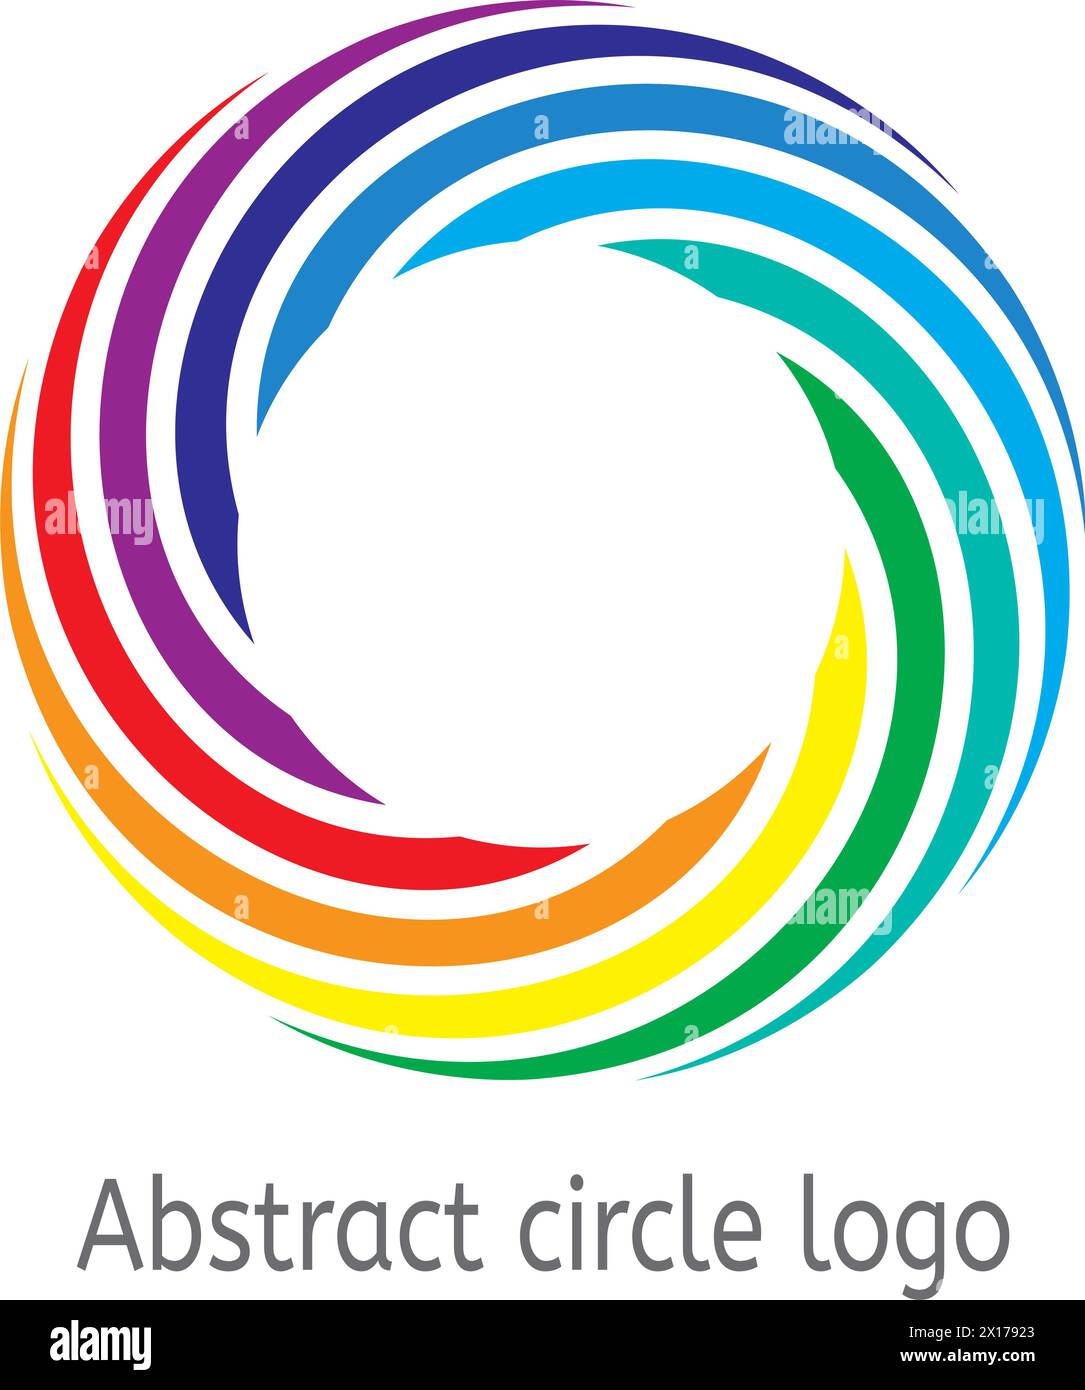 Vektorhintergrund des runden Kreises mit Regenbogenfarben. Abstraktes Logo in farbigem Kreis für Grafikdesign und Business-Illustration Stock Vektor